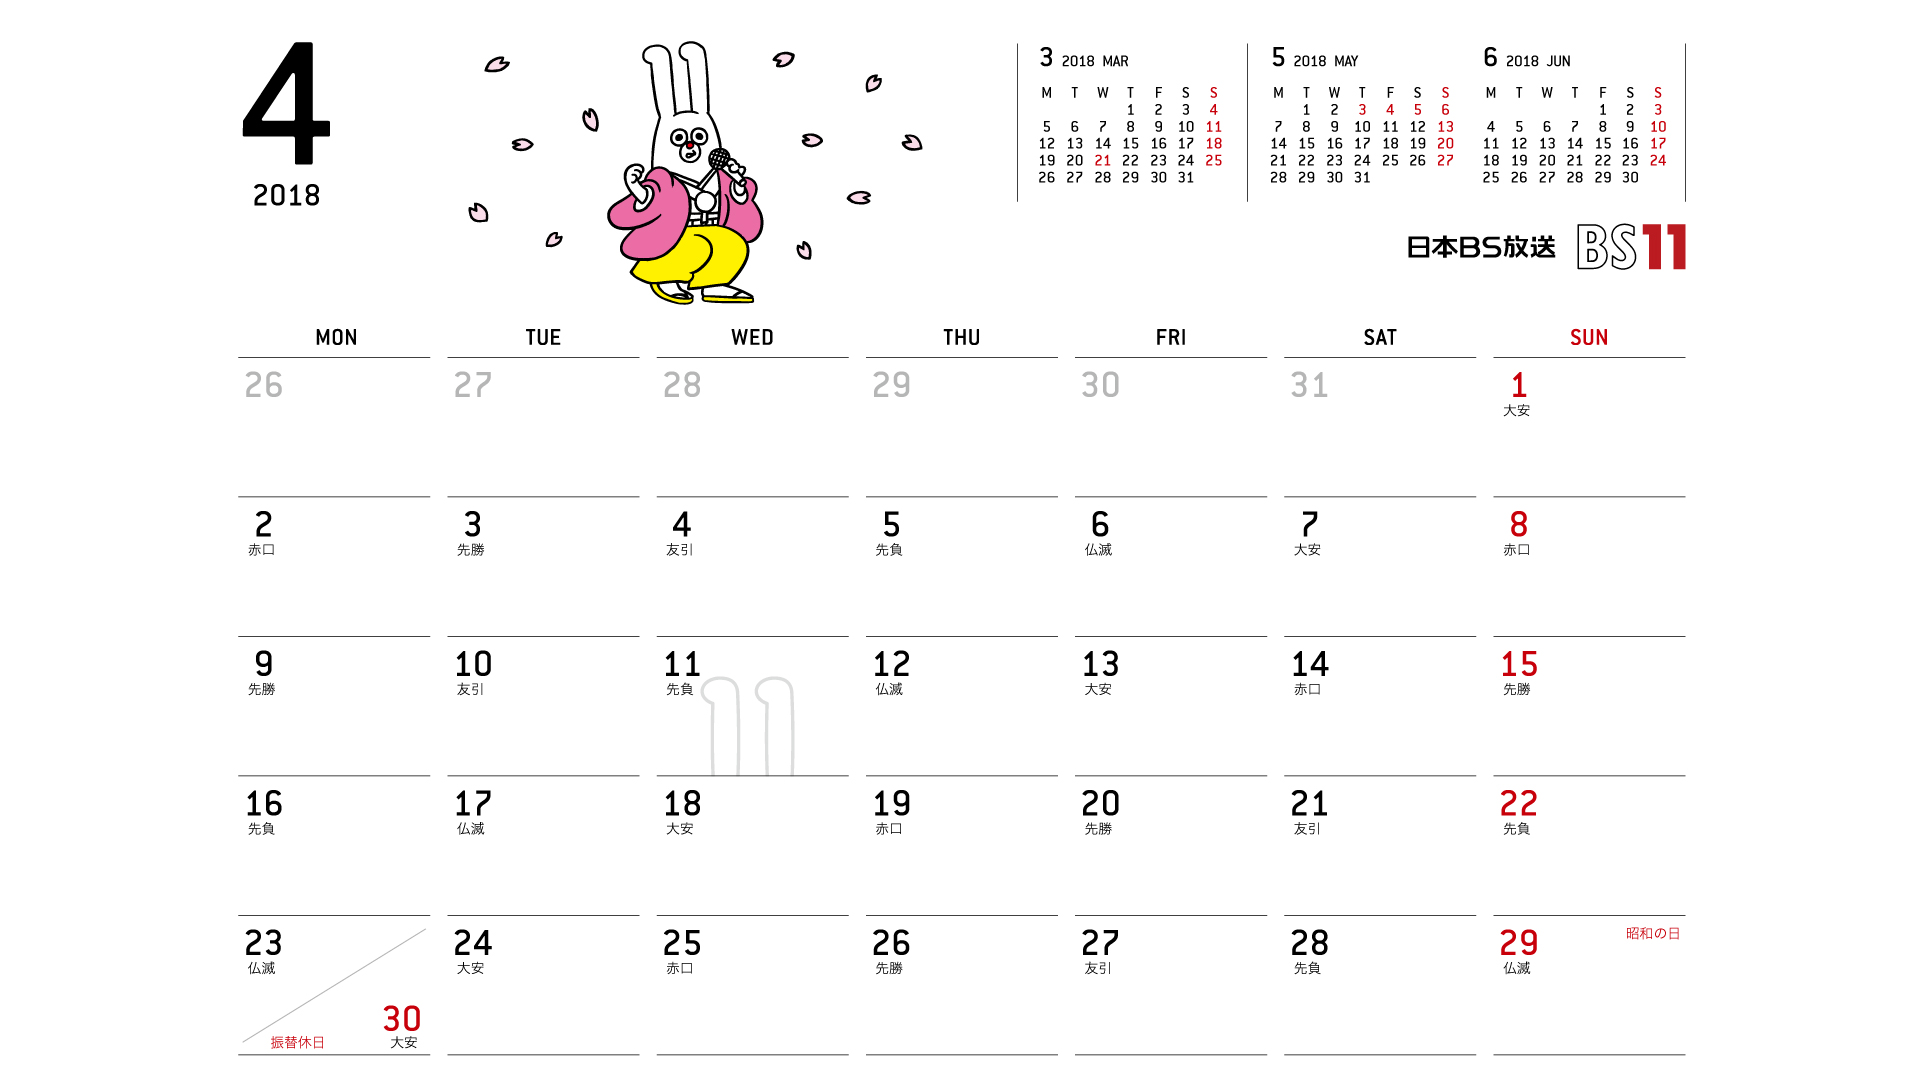 じゅういっちゃんのデジタルカレンダー18年04月 Bs11 イレブン いつでも無料放送